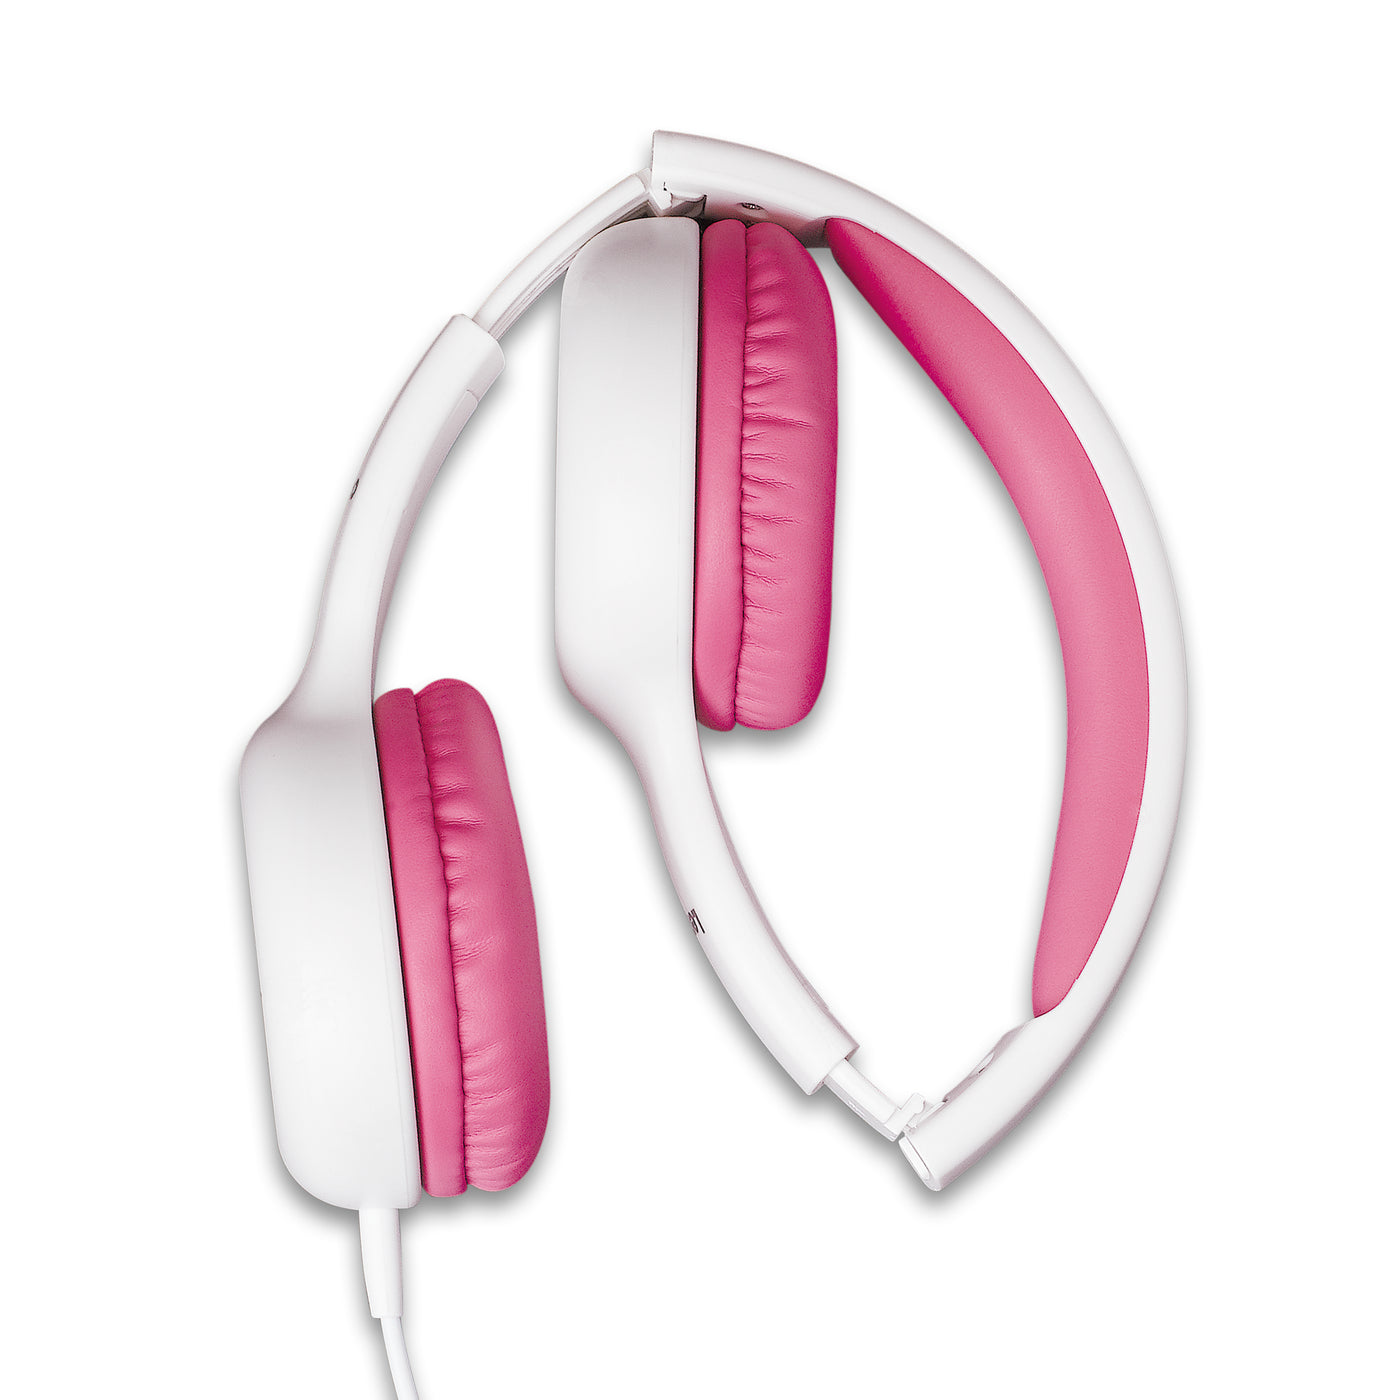 LENCO HP-010PK - Słuchawki dla dzieci, różowe